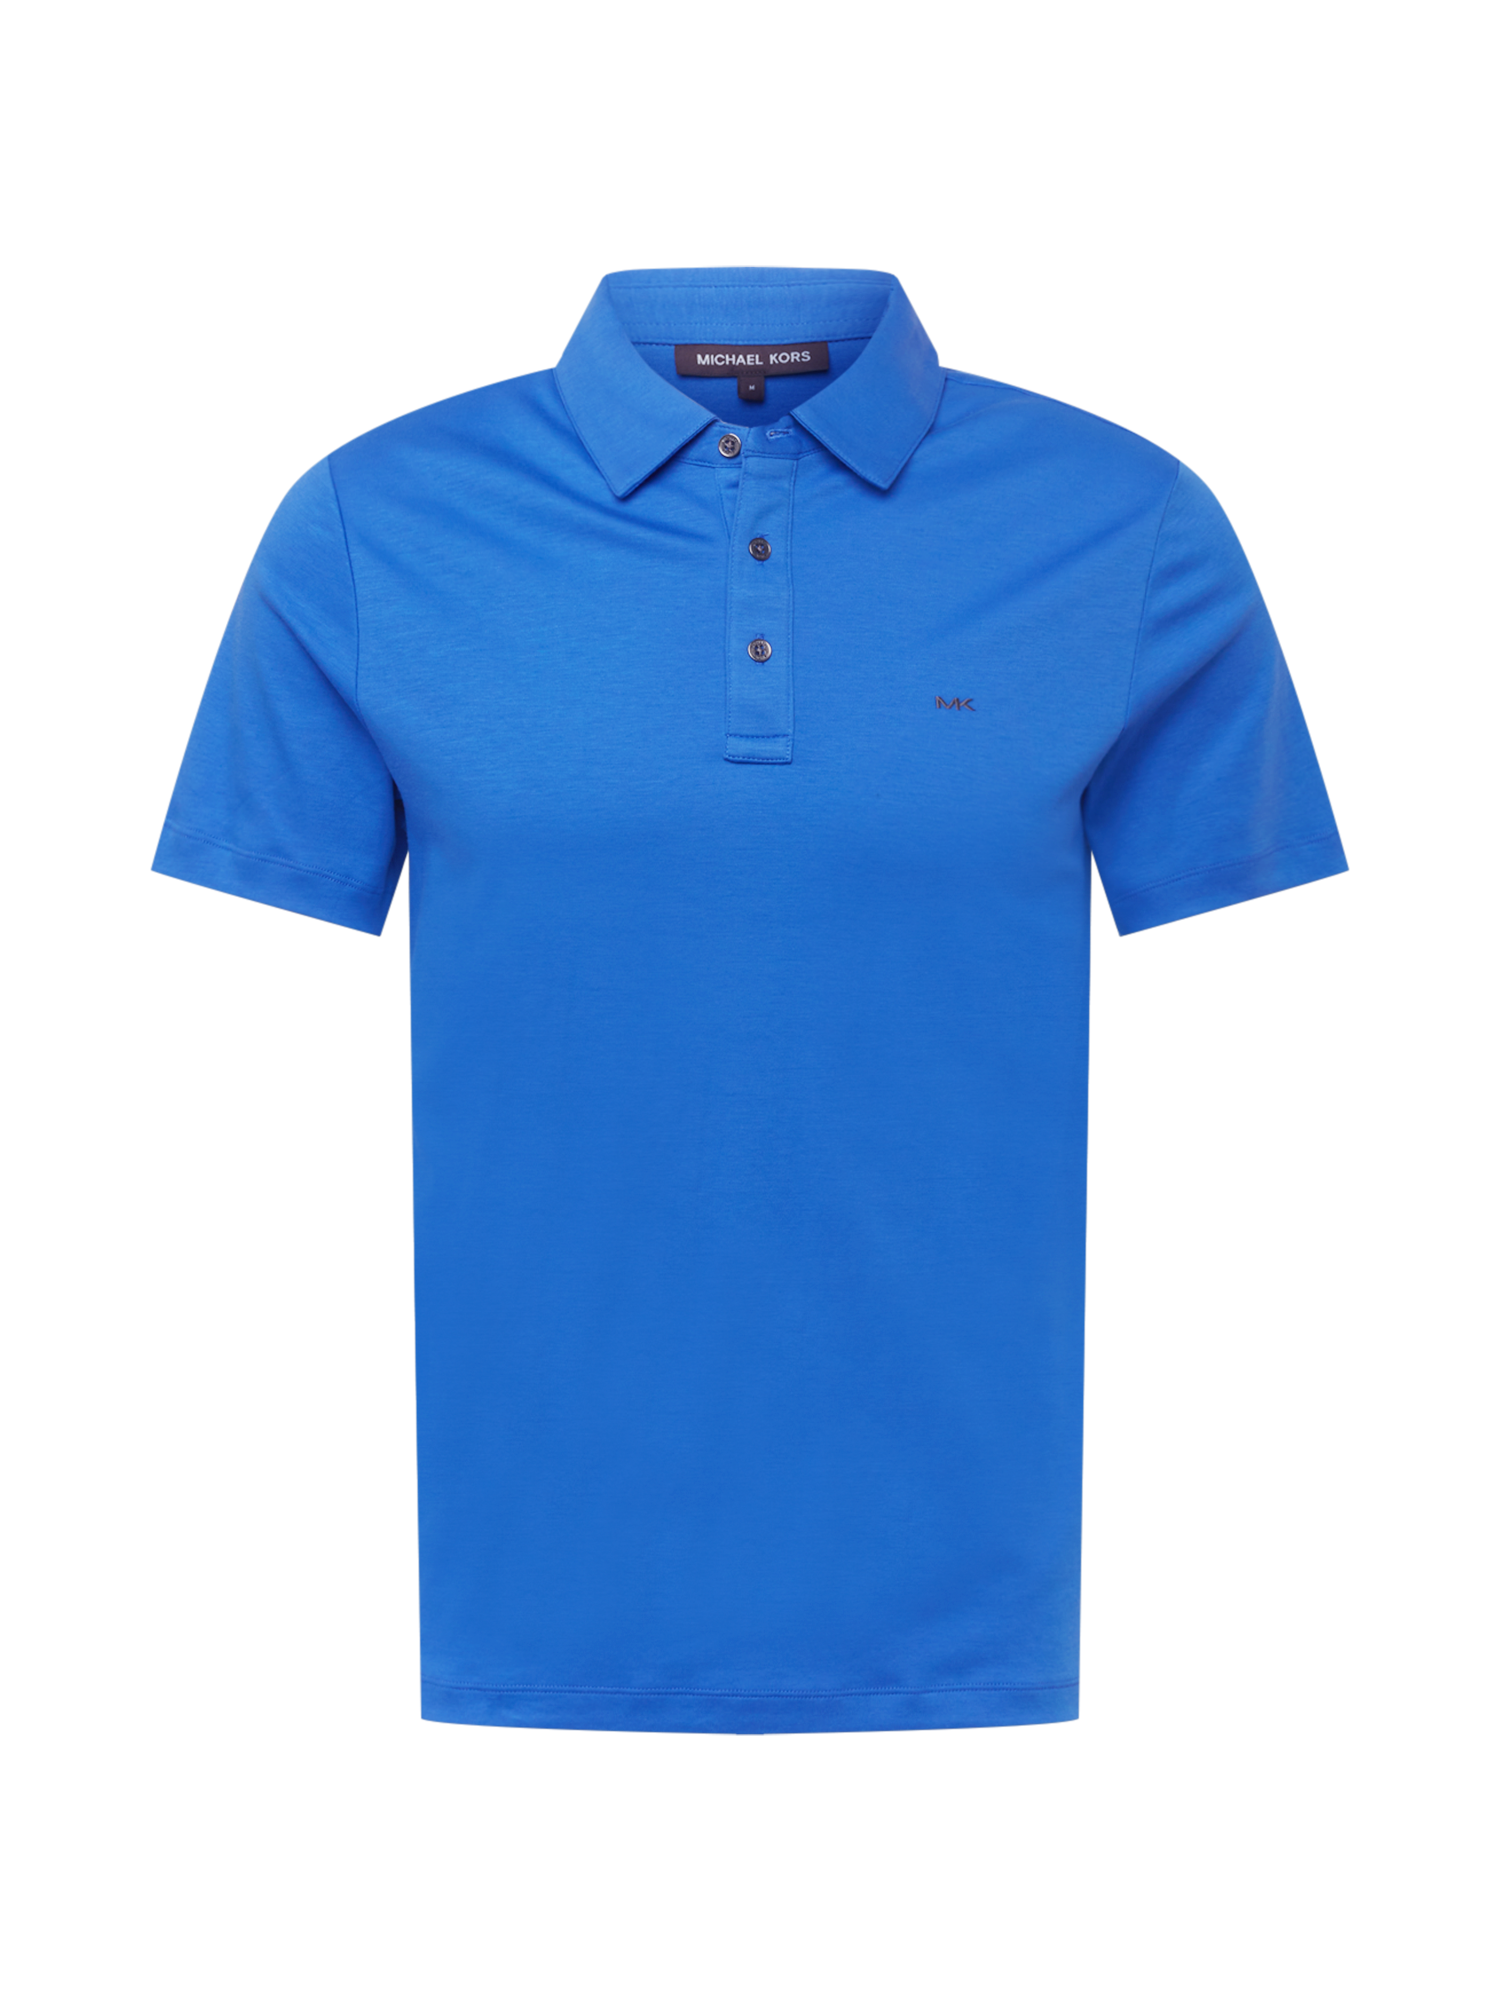 Odzież Mężczyźni Michael Kors Koszulka w kolorze Ciemny Niebieskim 